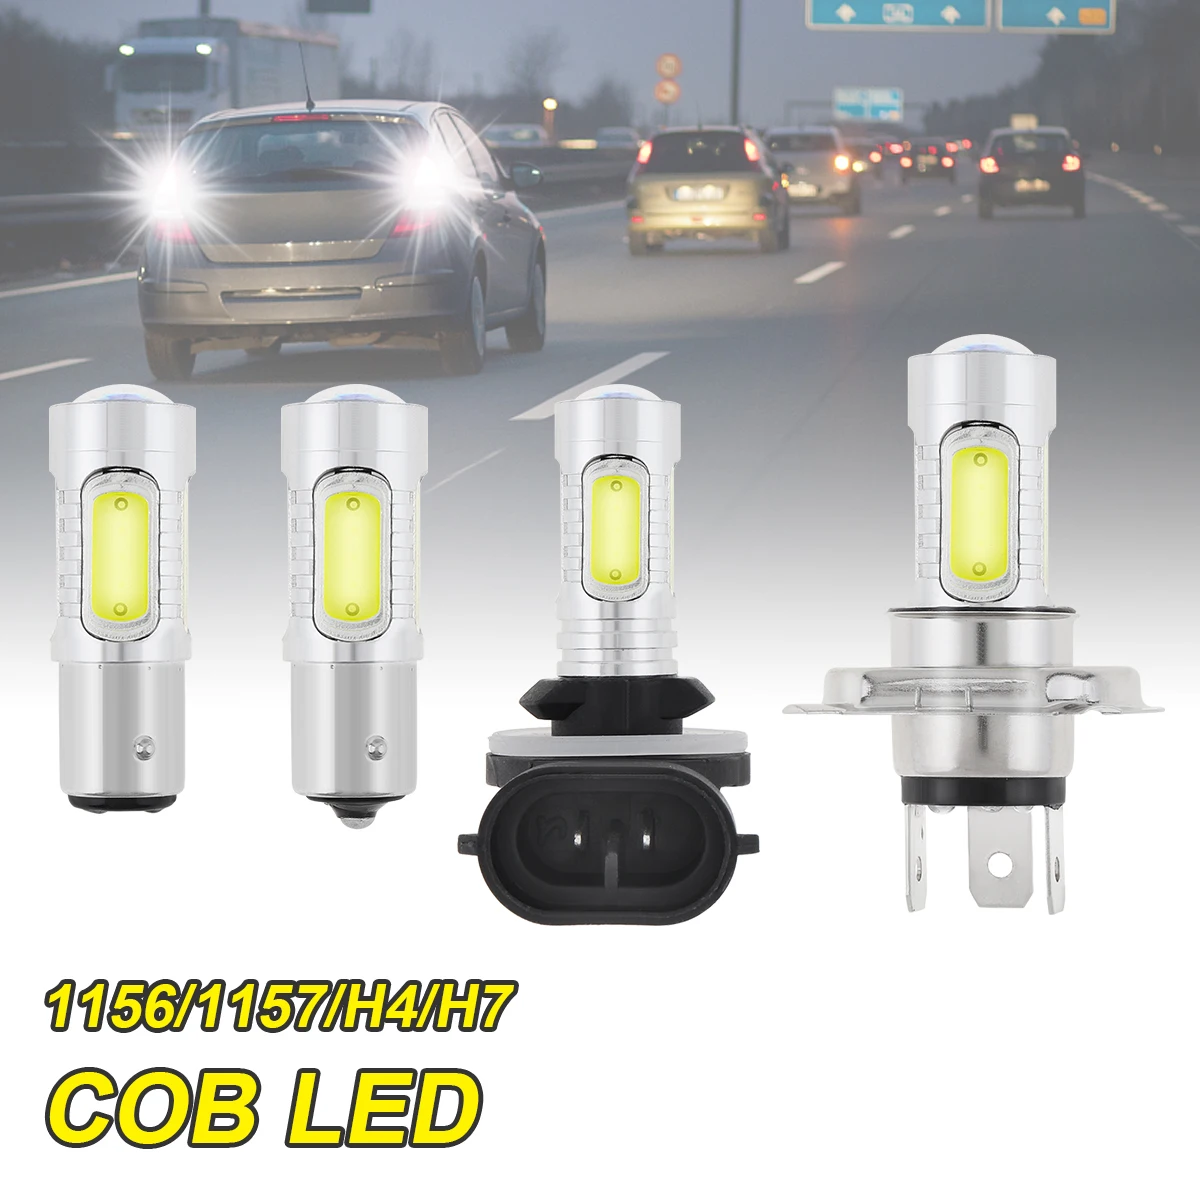 

12V COB Car Light Signal Lamp White Light 1156 1157 H4 H7 Led Bulbs Reversing Lights Turn Brake Backup Light for Car SUV Autos